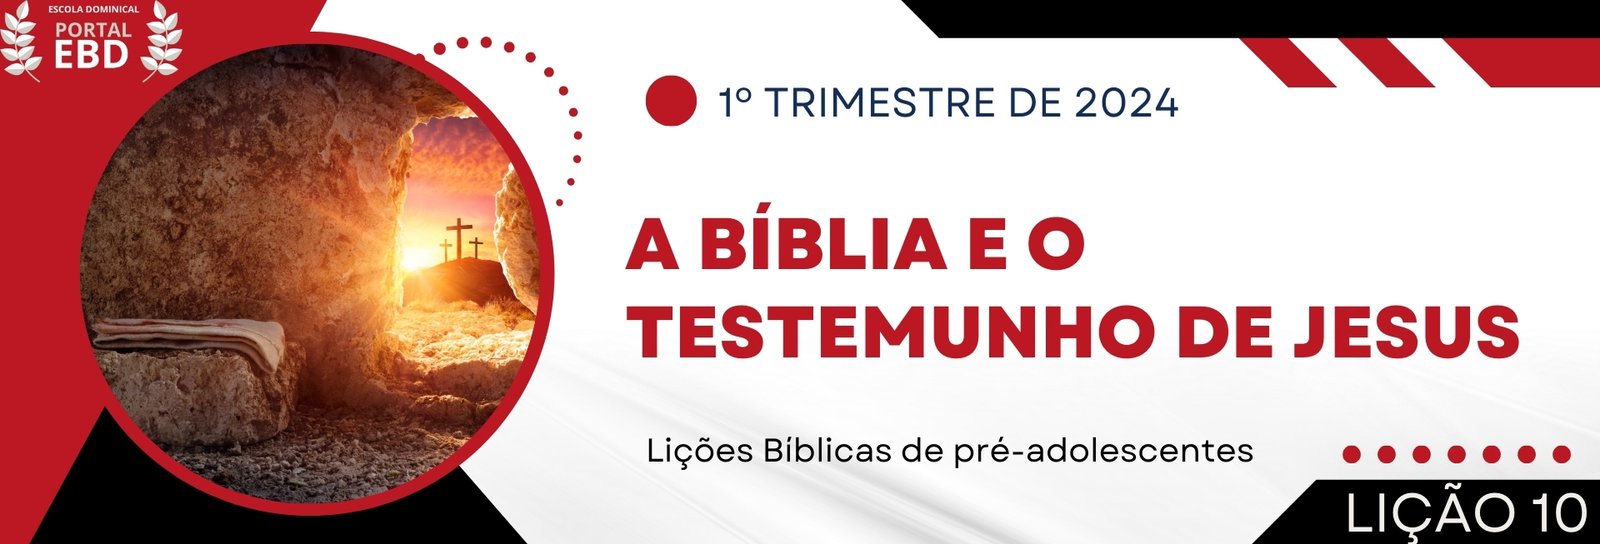 Lição 10 - A Bíblia e o testemunho de Jesus II